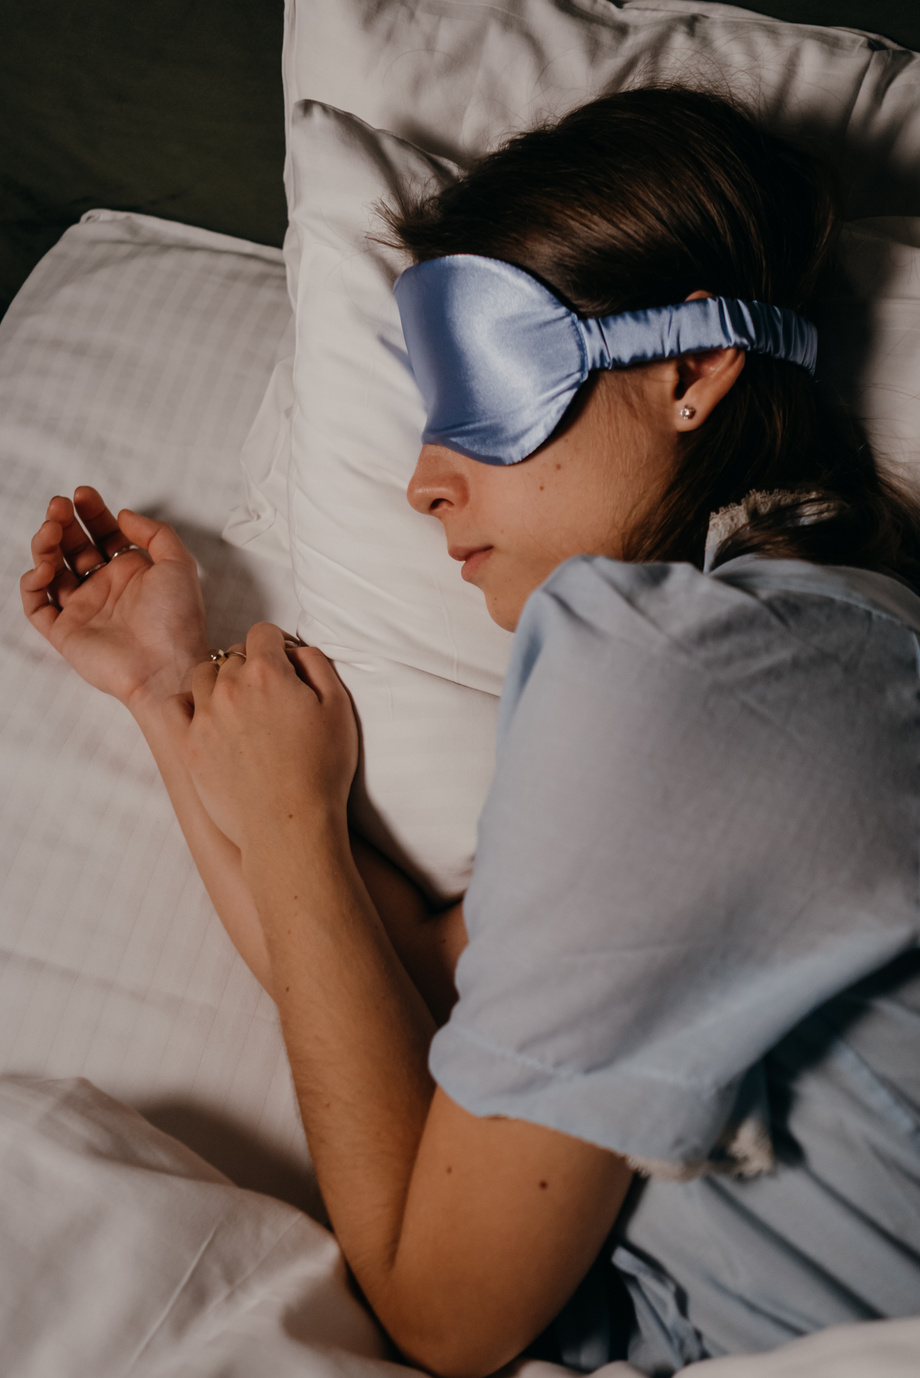 Asleep Woman wearing Eye Sleeping Mask